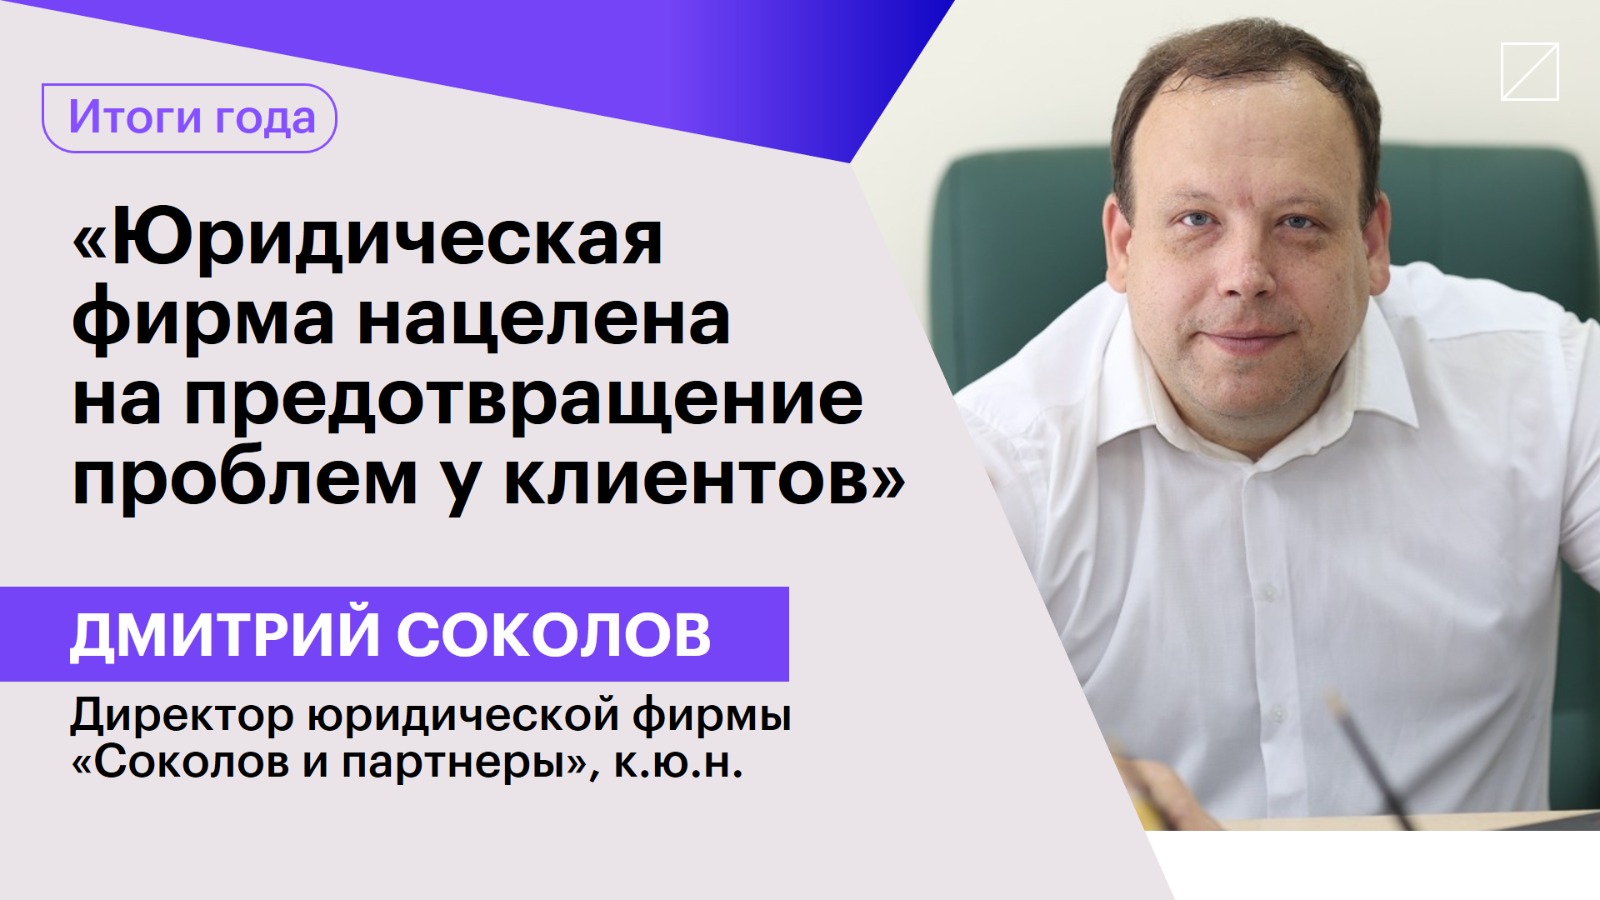 Дмитрий Соколов: «Юридическая фирма нацелена на предотвращение проблем у клиентов»